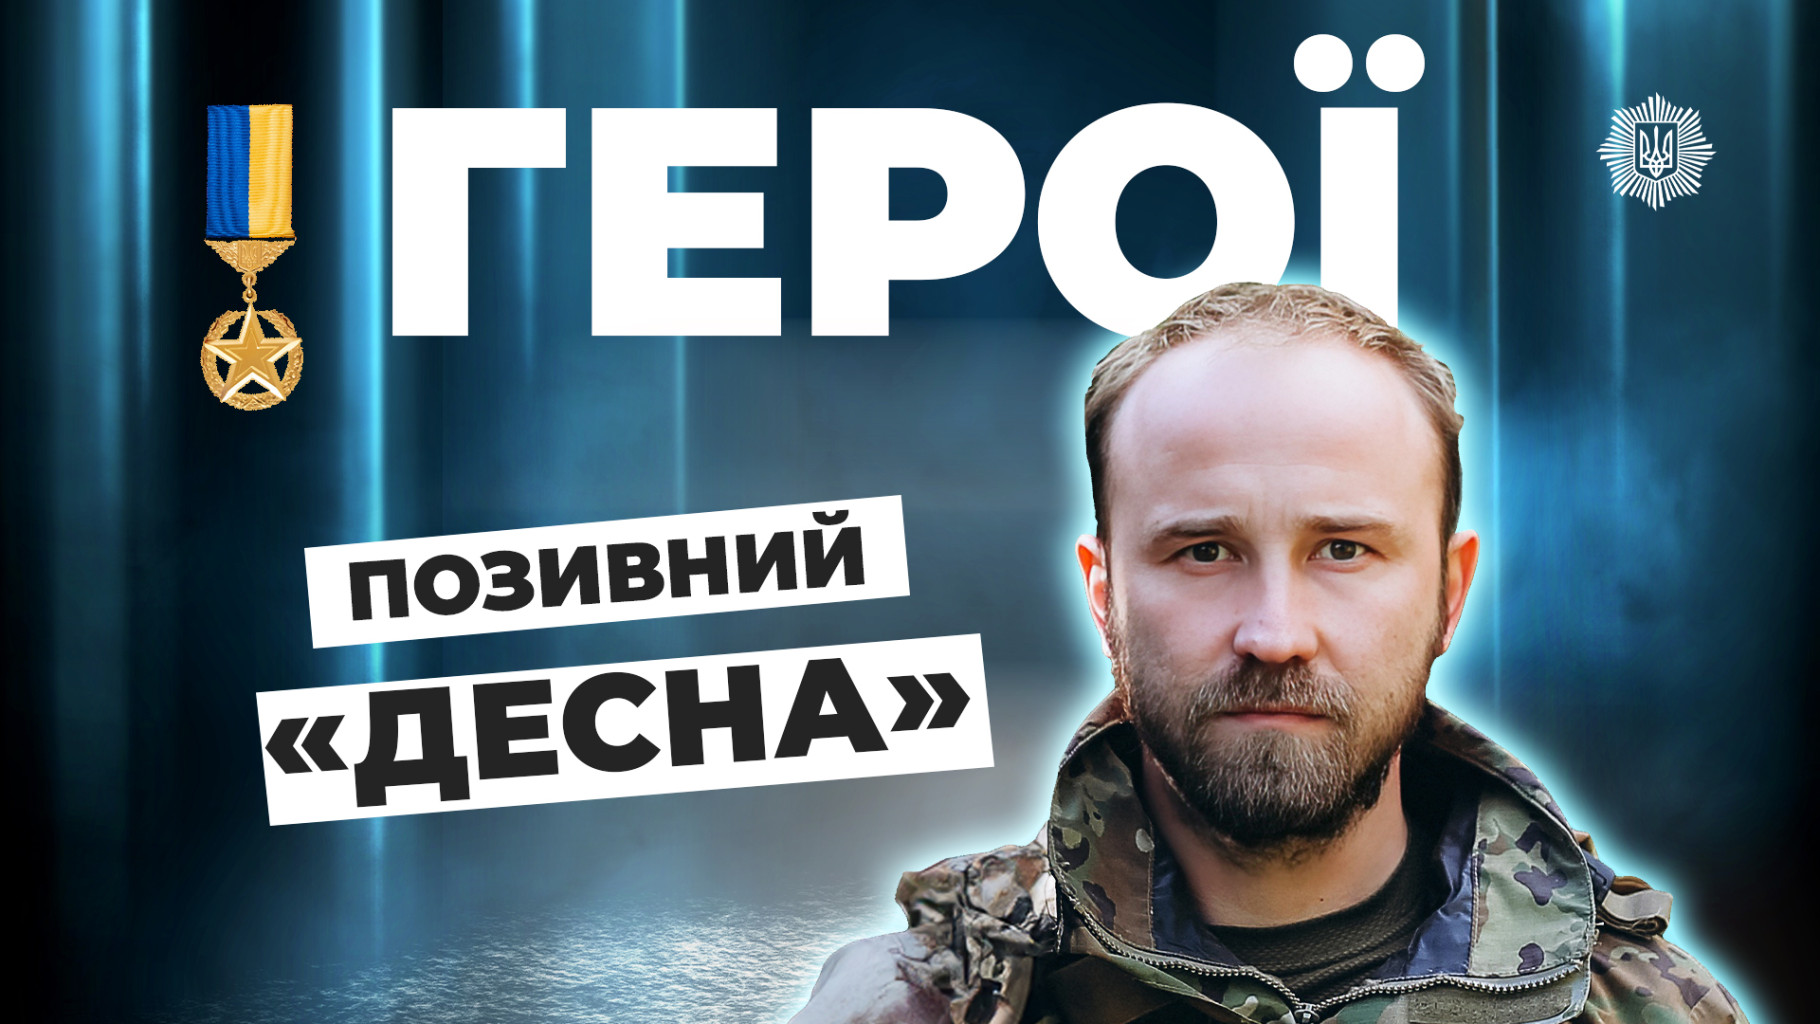 "Десна": Третину життя на захисті України (ВІДЕО)